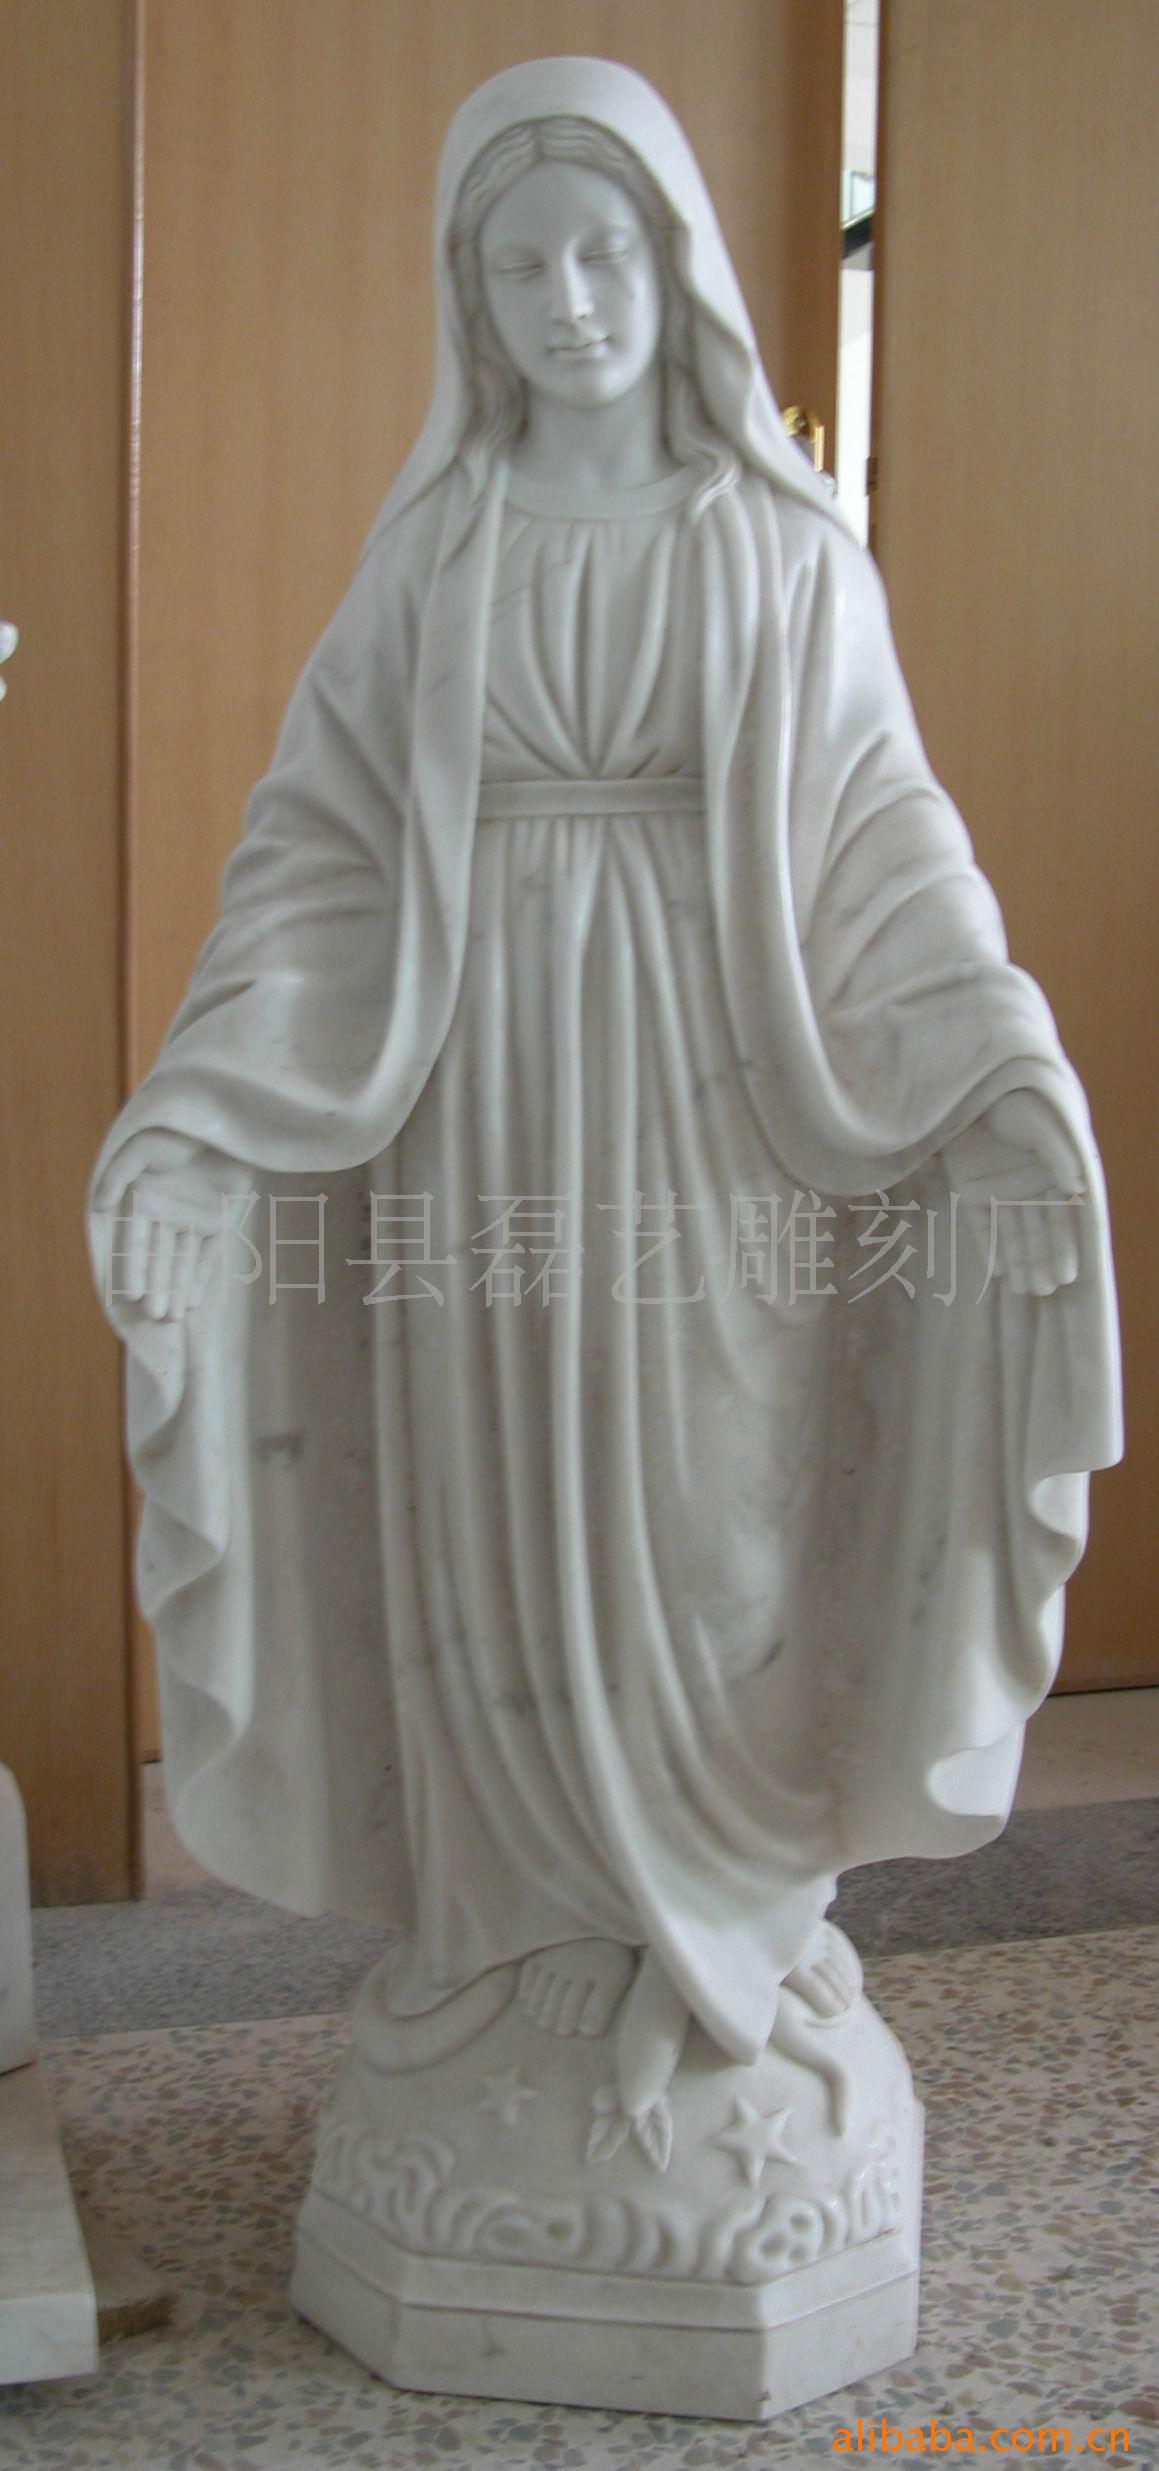 厂家长期订做圣母玛利亚汉白玉石雕 天主教/基督教/耶稣圣像石雕